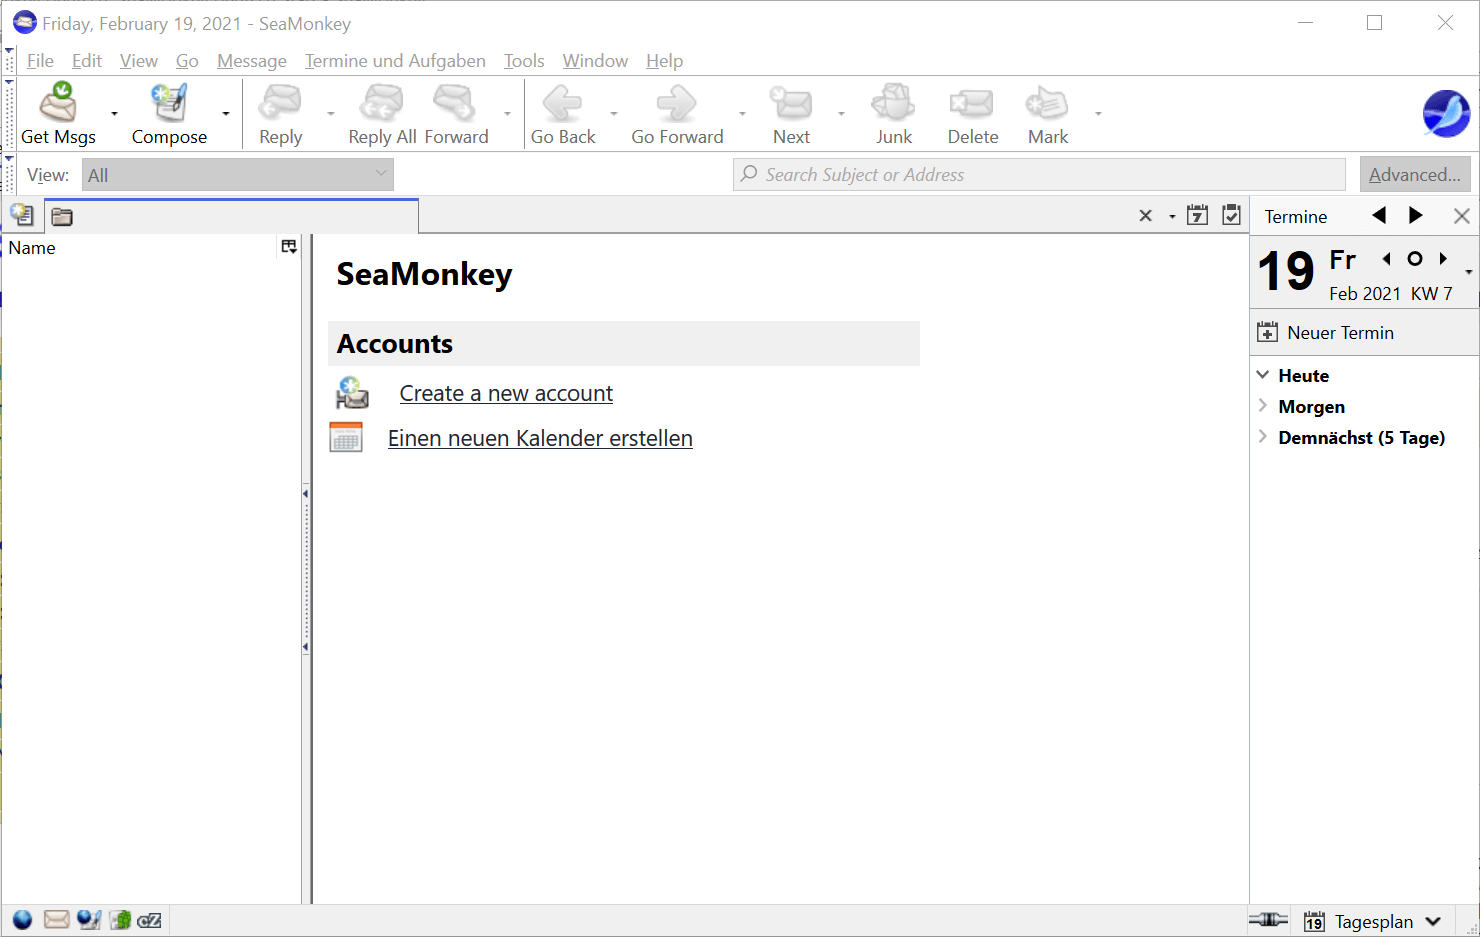 Screenshot of SeaMonkey interface